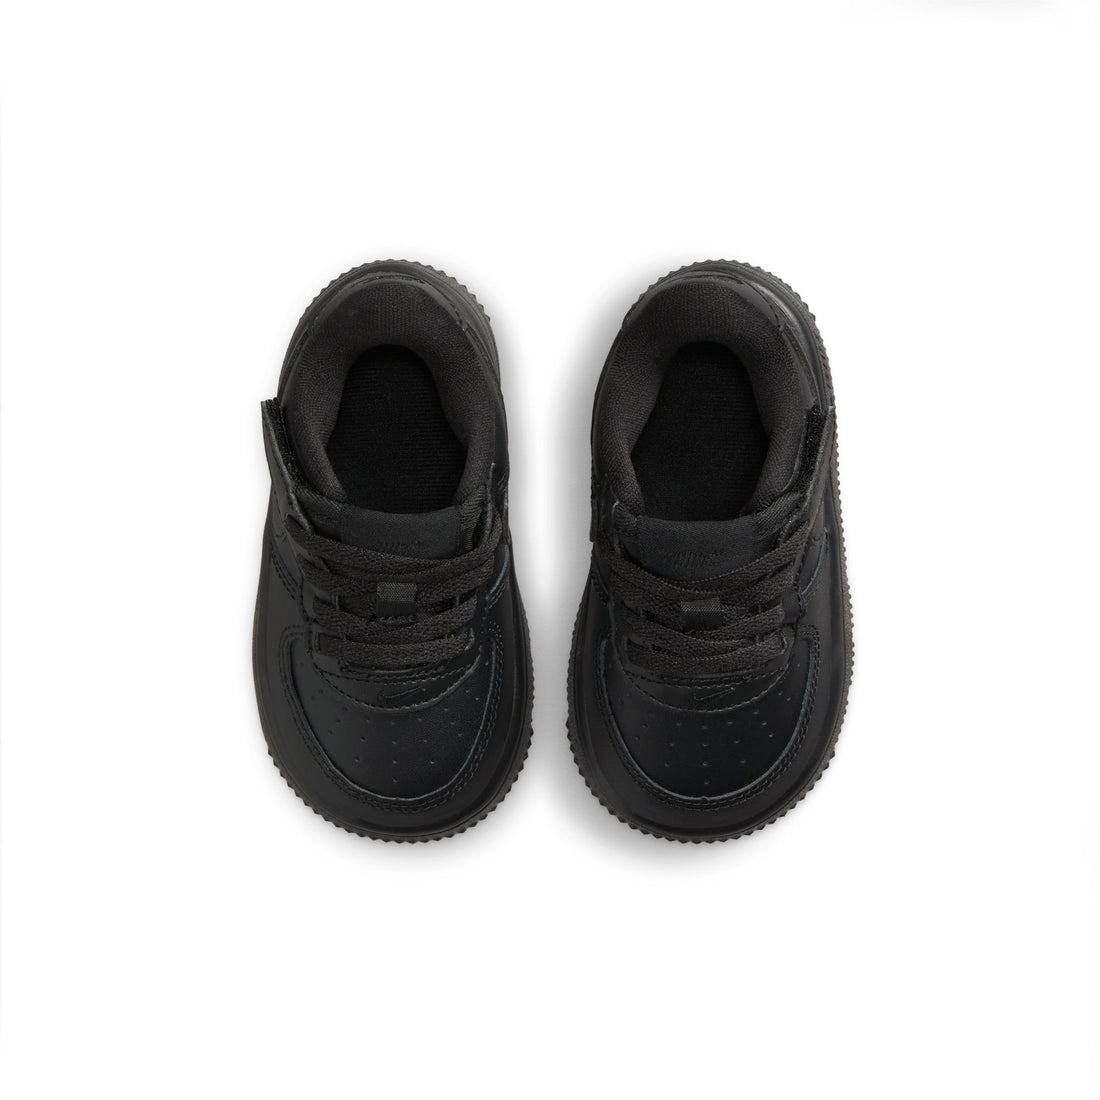 Nike Force 1 Low Easyon TD (Black/Black)